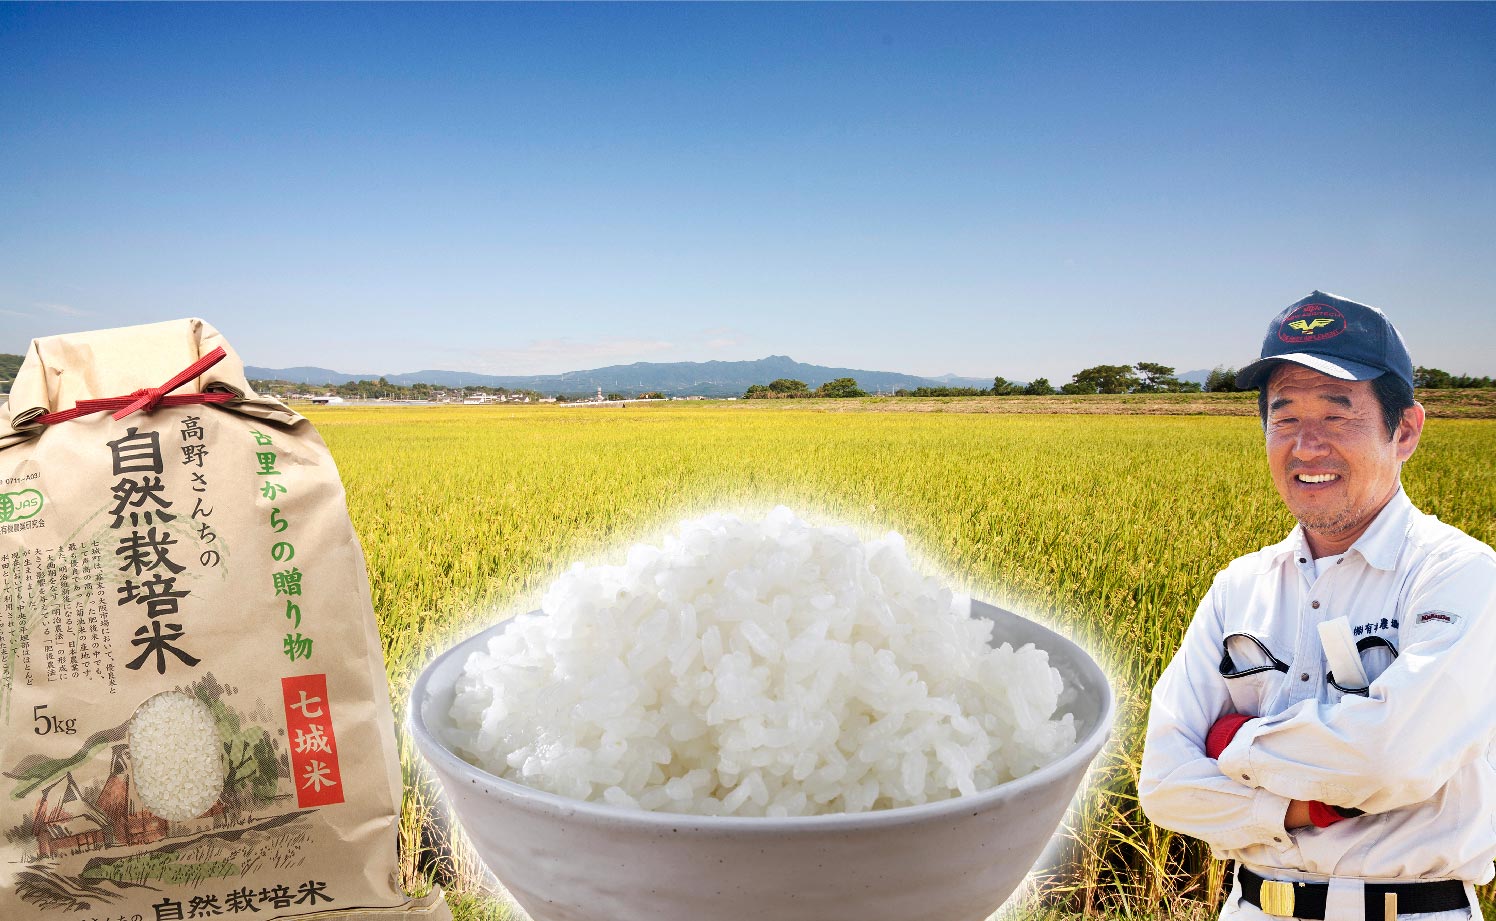 新米‼️農家直送 自然栽培無農薬 30kg れんげ米 菊池米七城町栽培食味